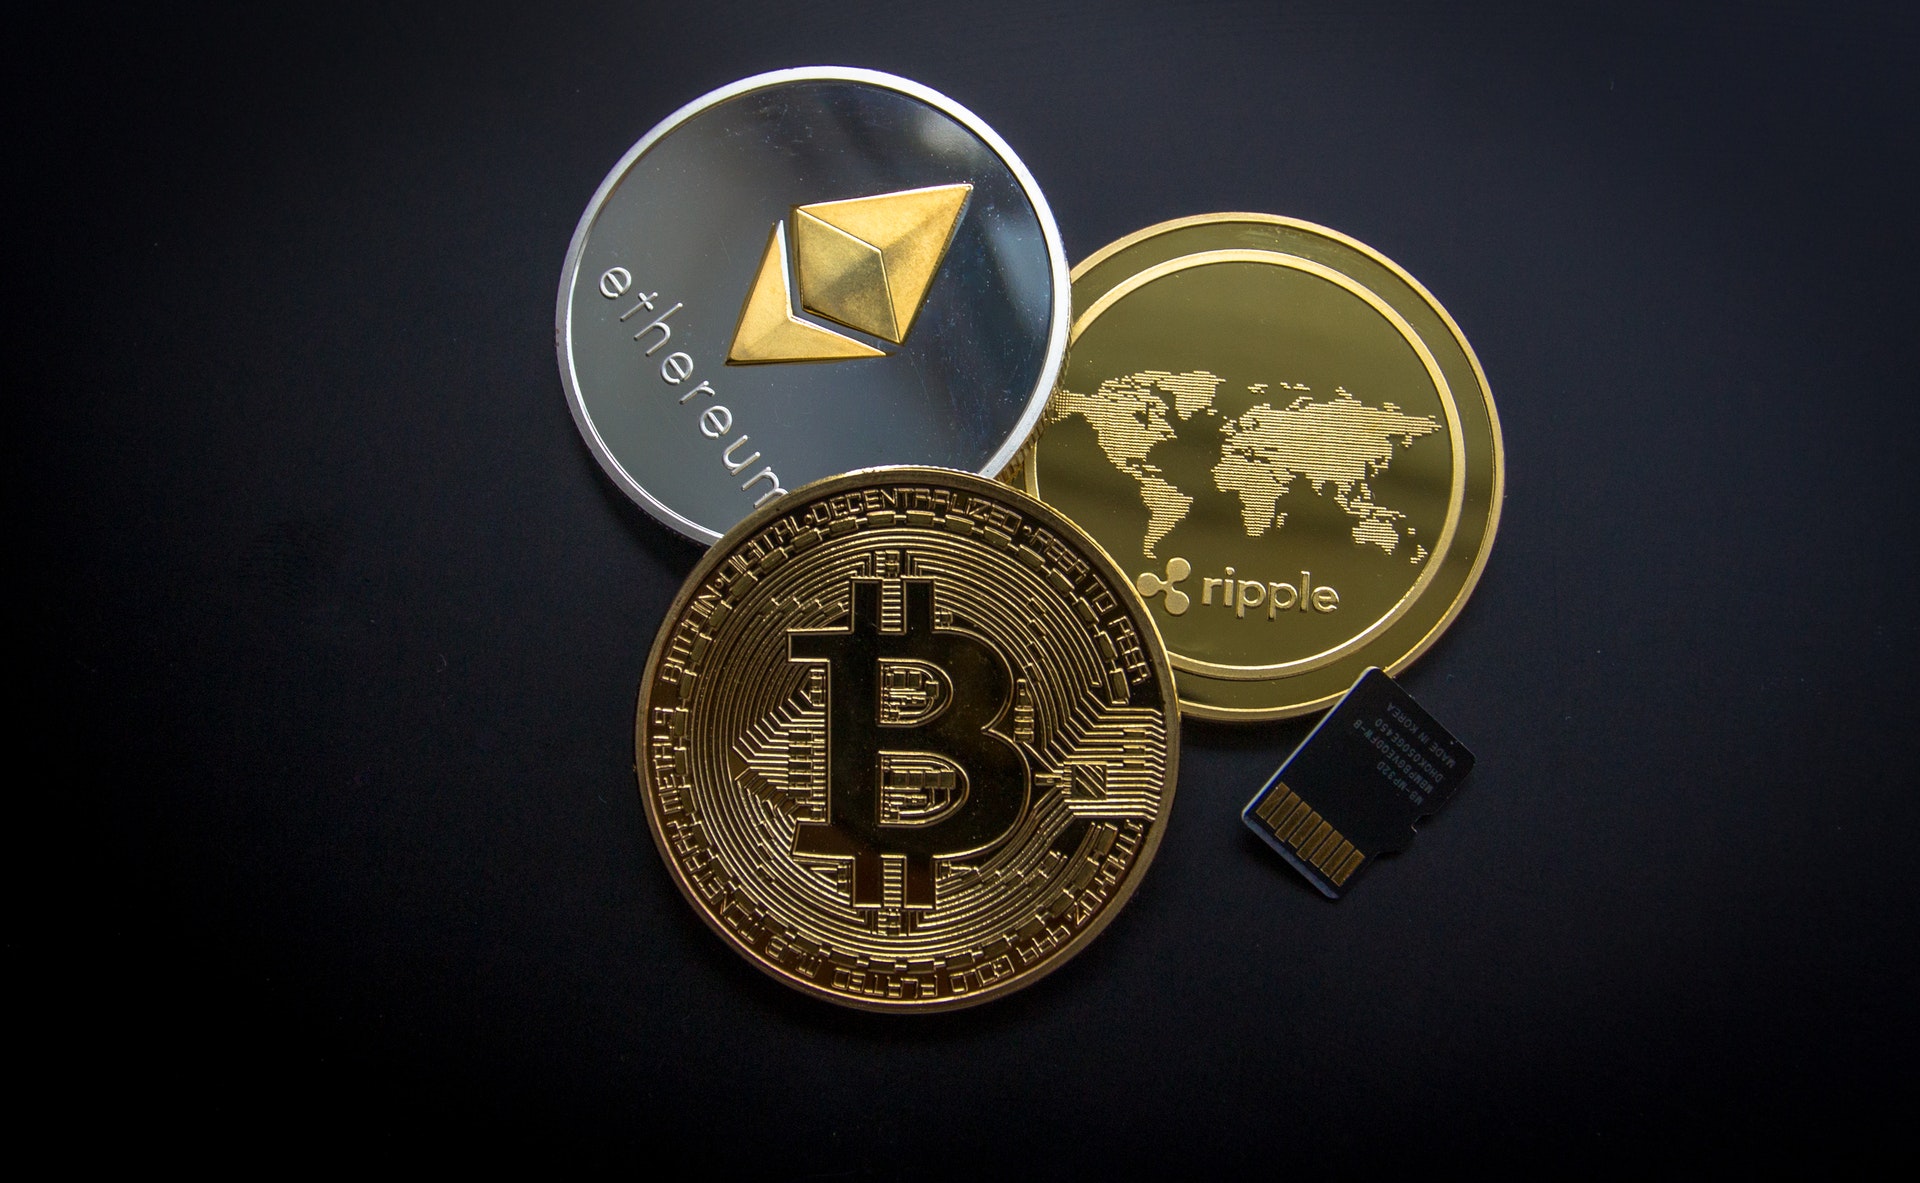 Cryptoday 034: Bakit Ako Tumigil Mag-Invest sa Bitcoin (Tagalog)